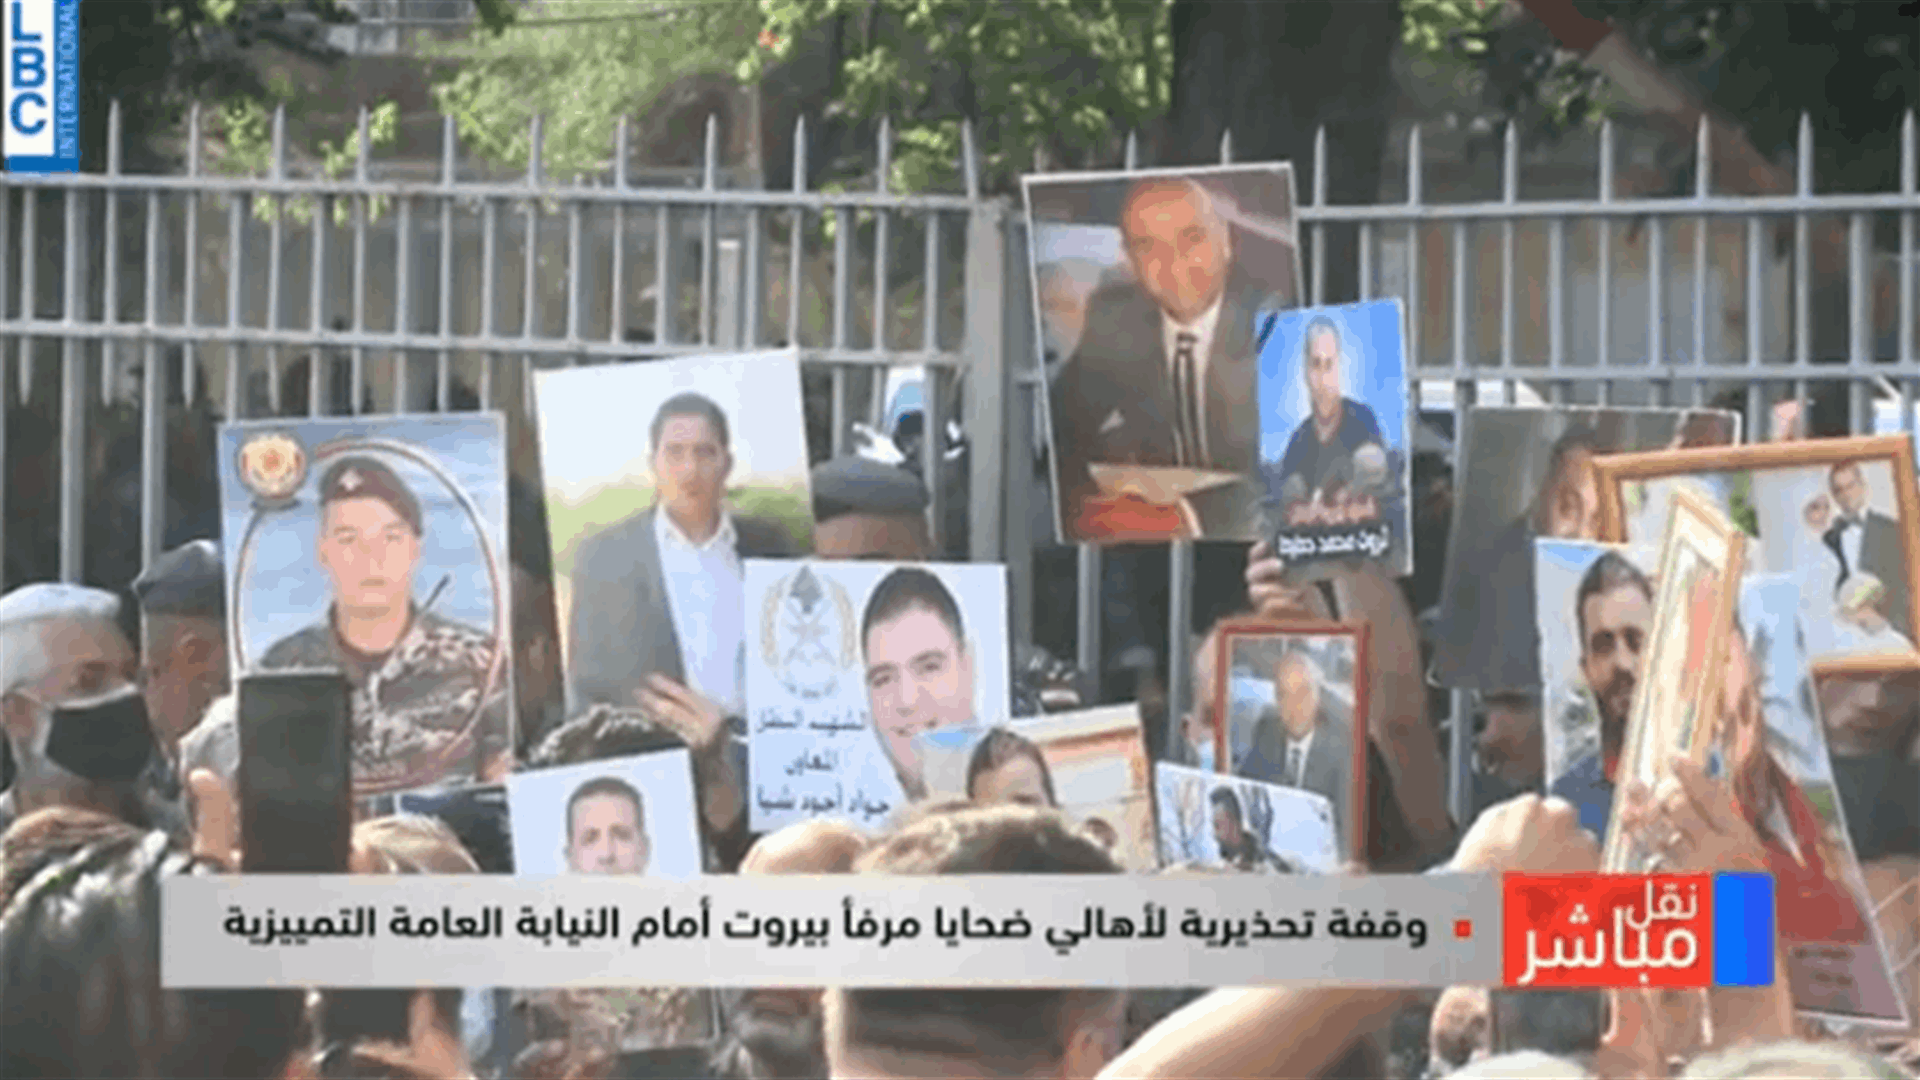 وقفة تحذيرية لأهالي ضحايا مرفأ بيروت أمام النيابة العامة التمييزية (فيديو)